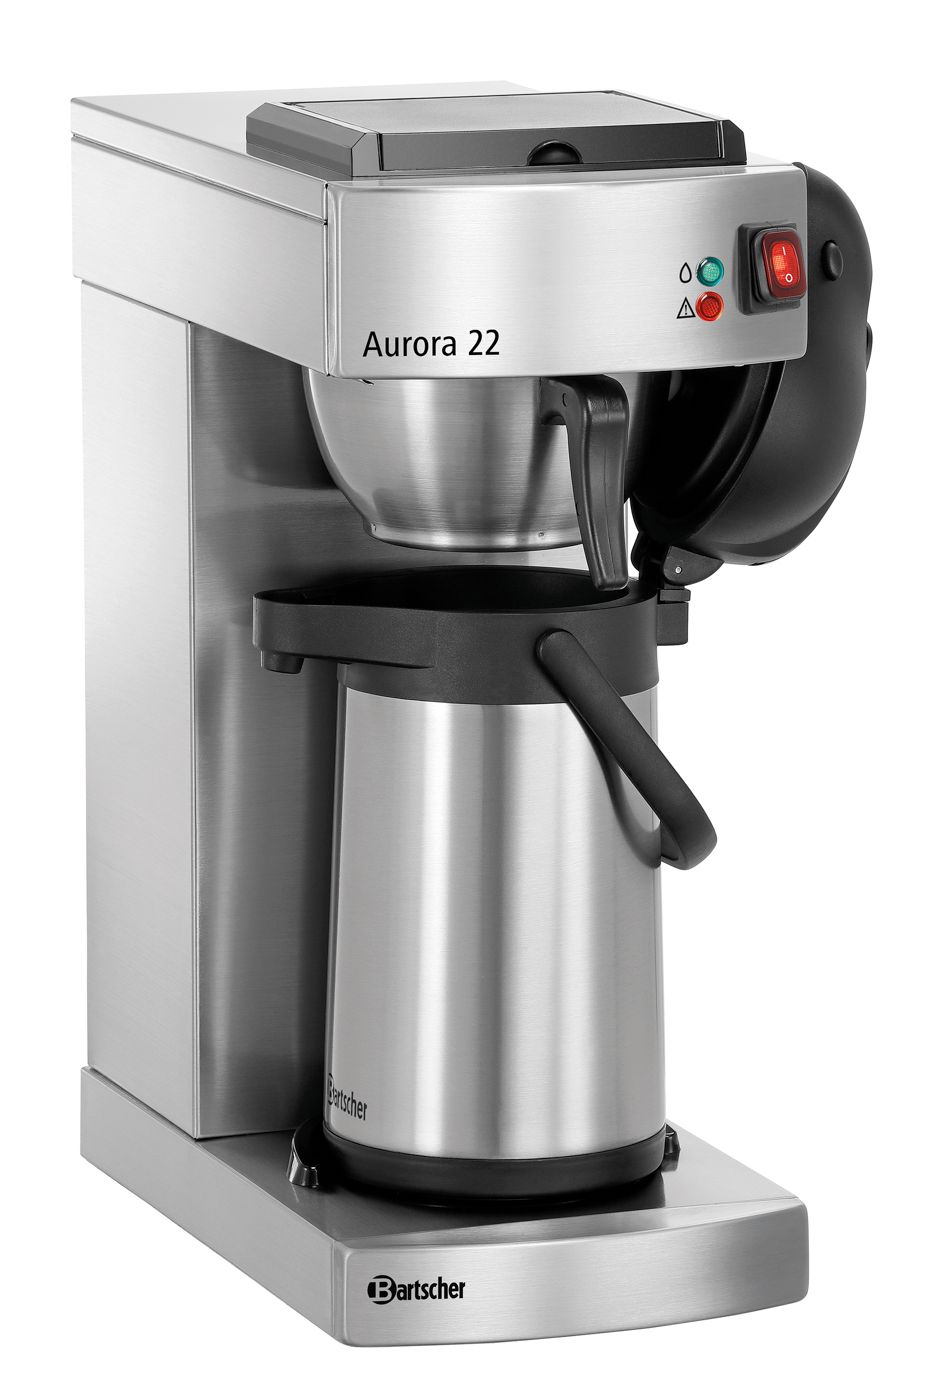 Bartscher Kaffeemaschine Aurora 22 | Steuerung: Kippschalter | Maße: 21,5 x 40,5 x 520 cm. Gewicht: 8 kg